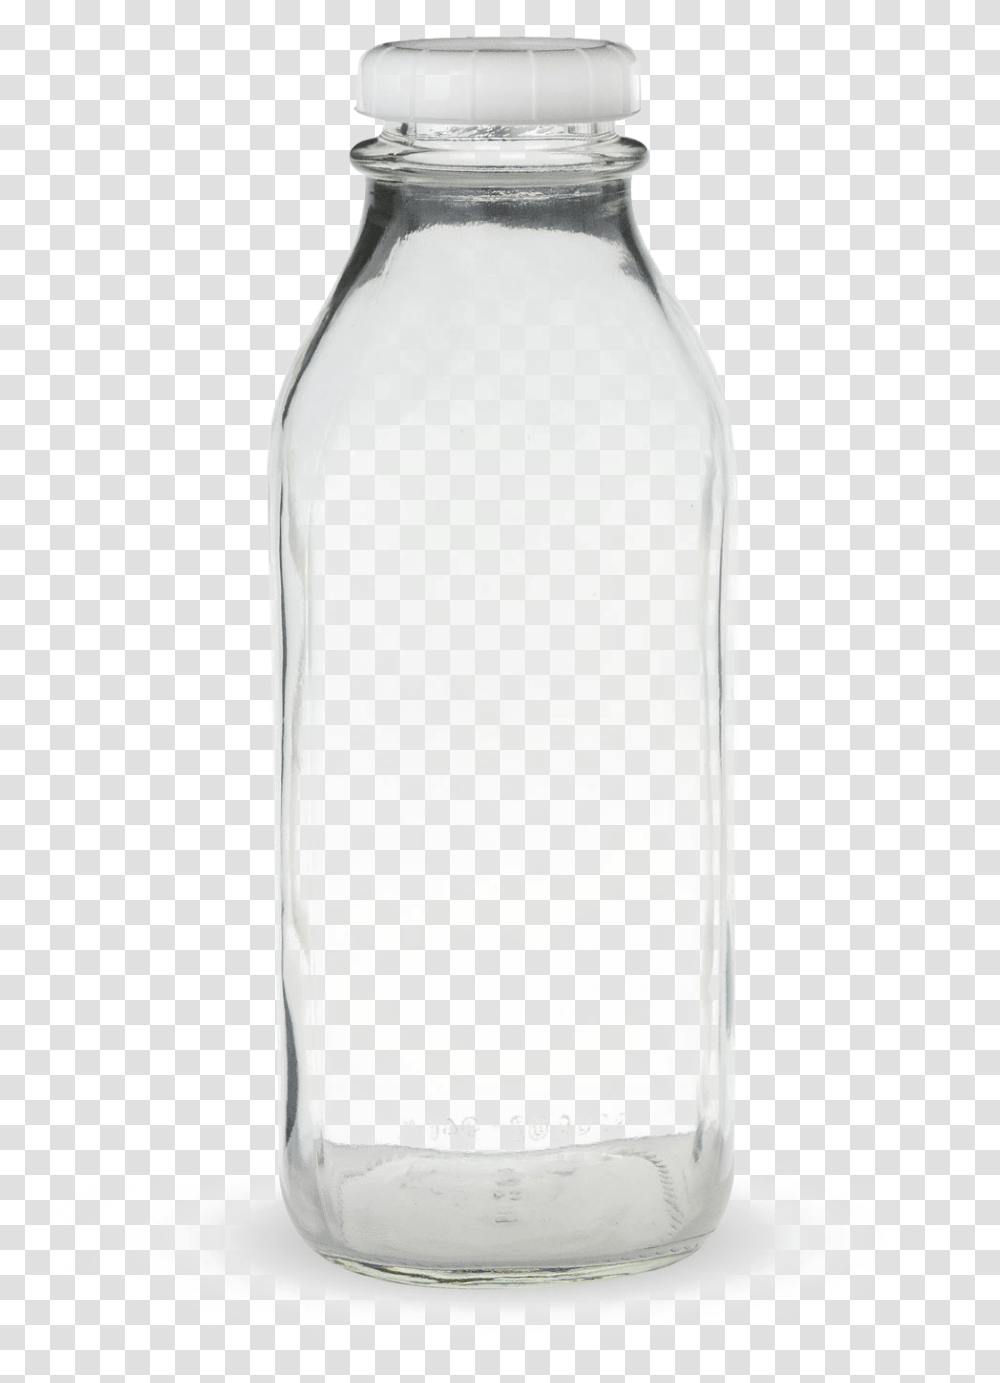 Bottle Background Bottle Black Background, Shaker, Milk, Beverage, Drink Transparent Png